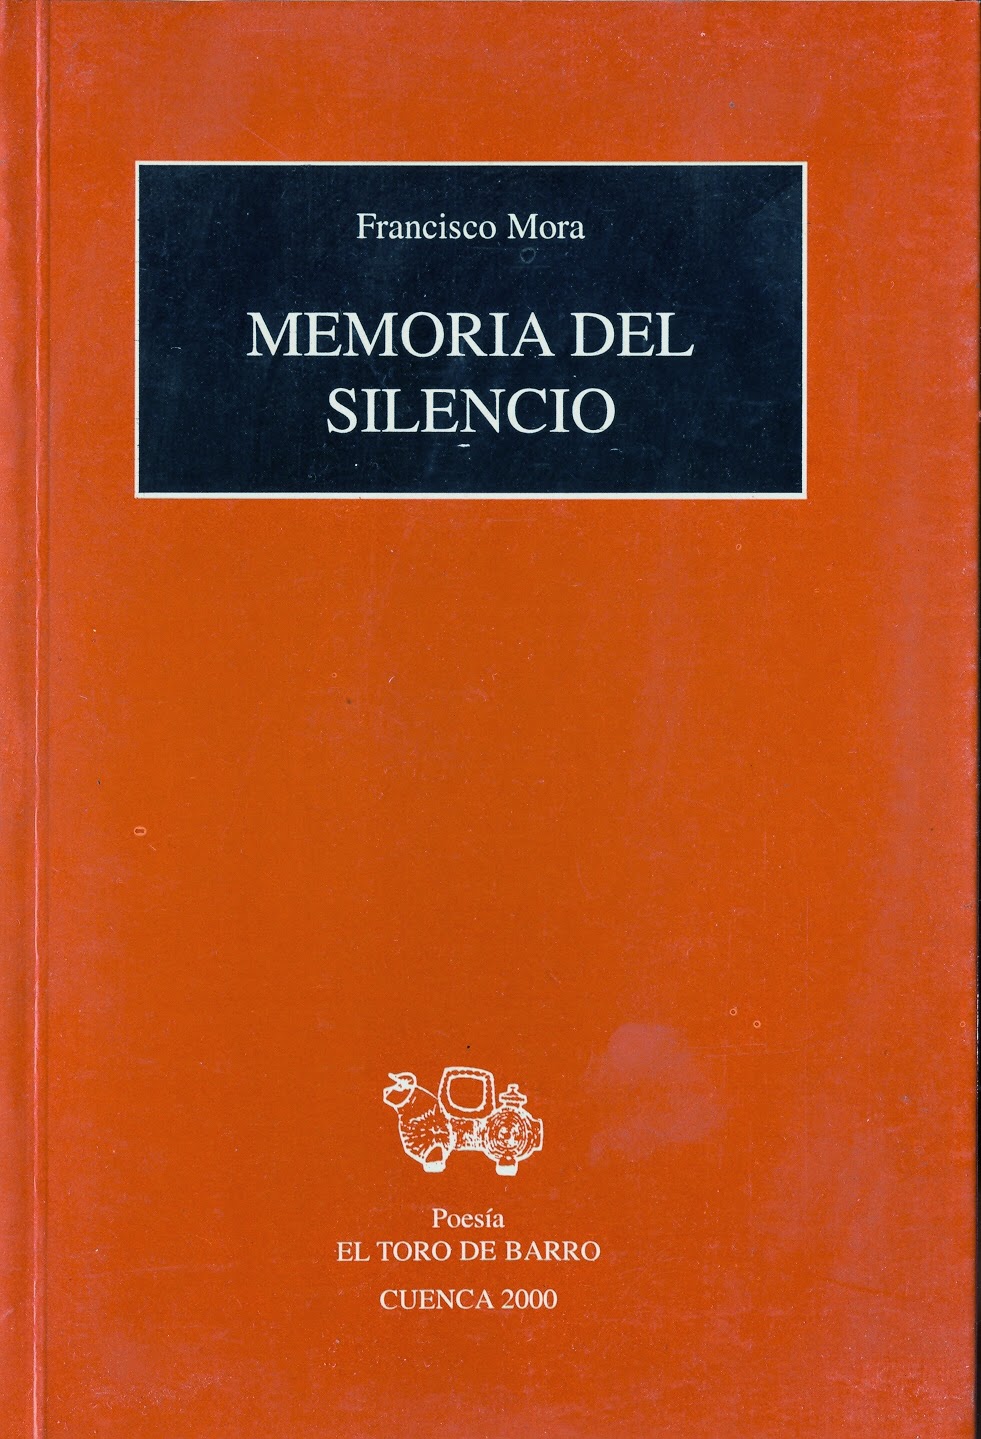  Francisco Mora, "Memorias del silencio" Ed. El Toro de Barro,  Tarancón de Cuenca, 2000. PVP: 10 euros. edicioneseltorodebarro@yahoo.es